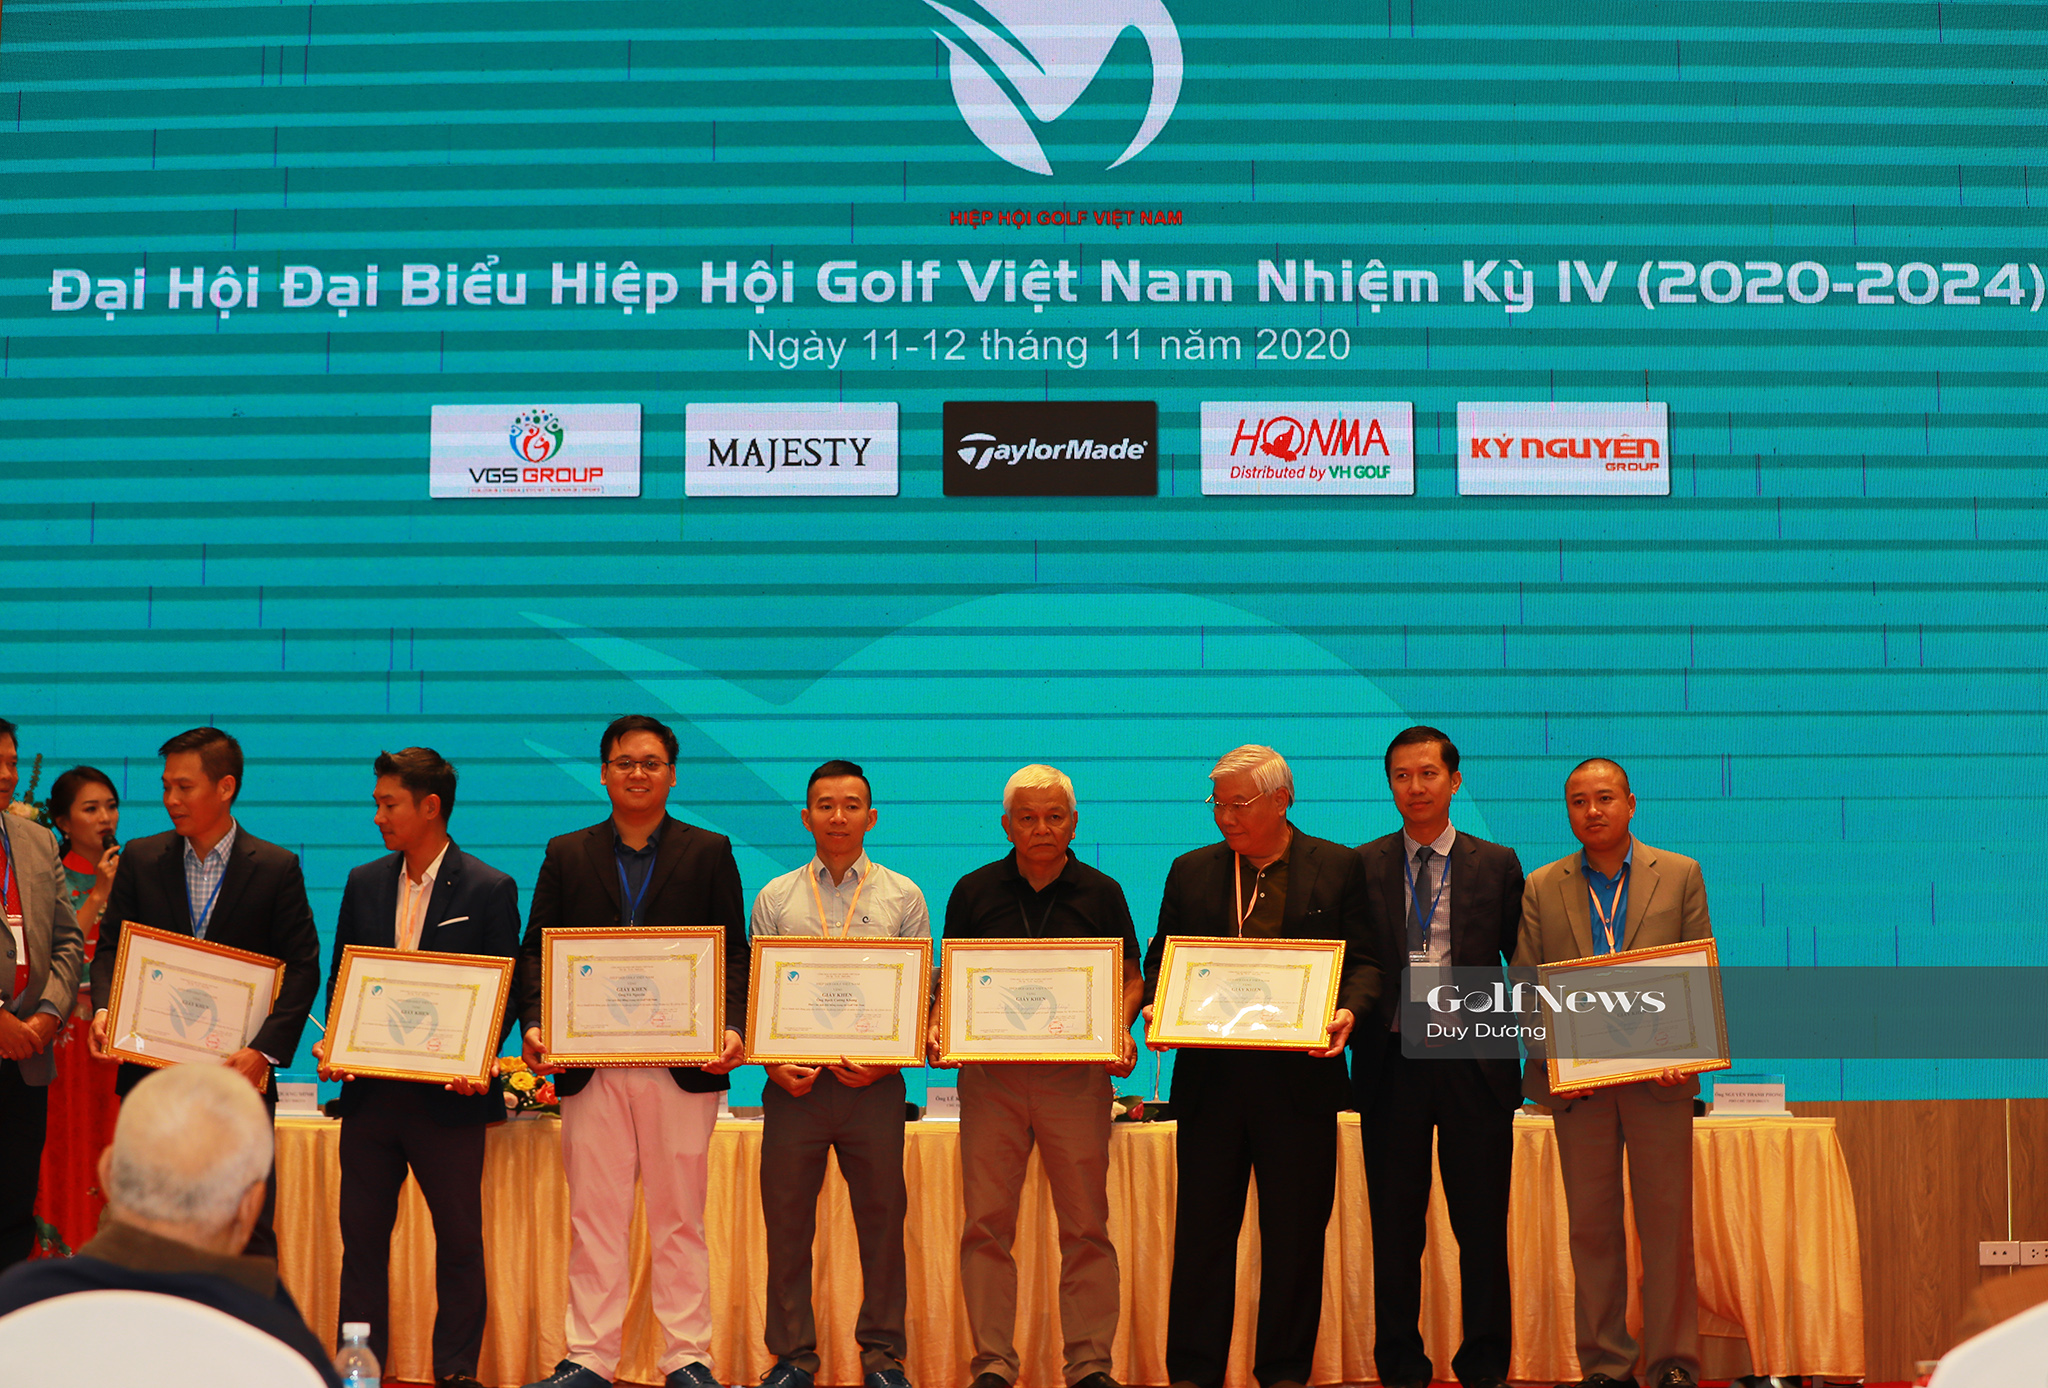 VGS Holding – đơn vị phát triển Vhandicap được khen tặng tại Đại hội đại biểu nhiệm kỳ IV Hiệp hội golf Việt Nam